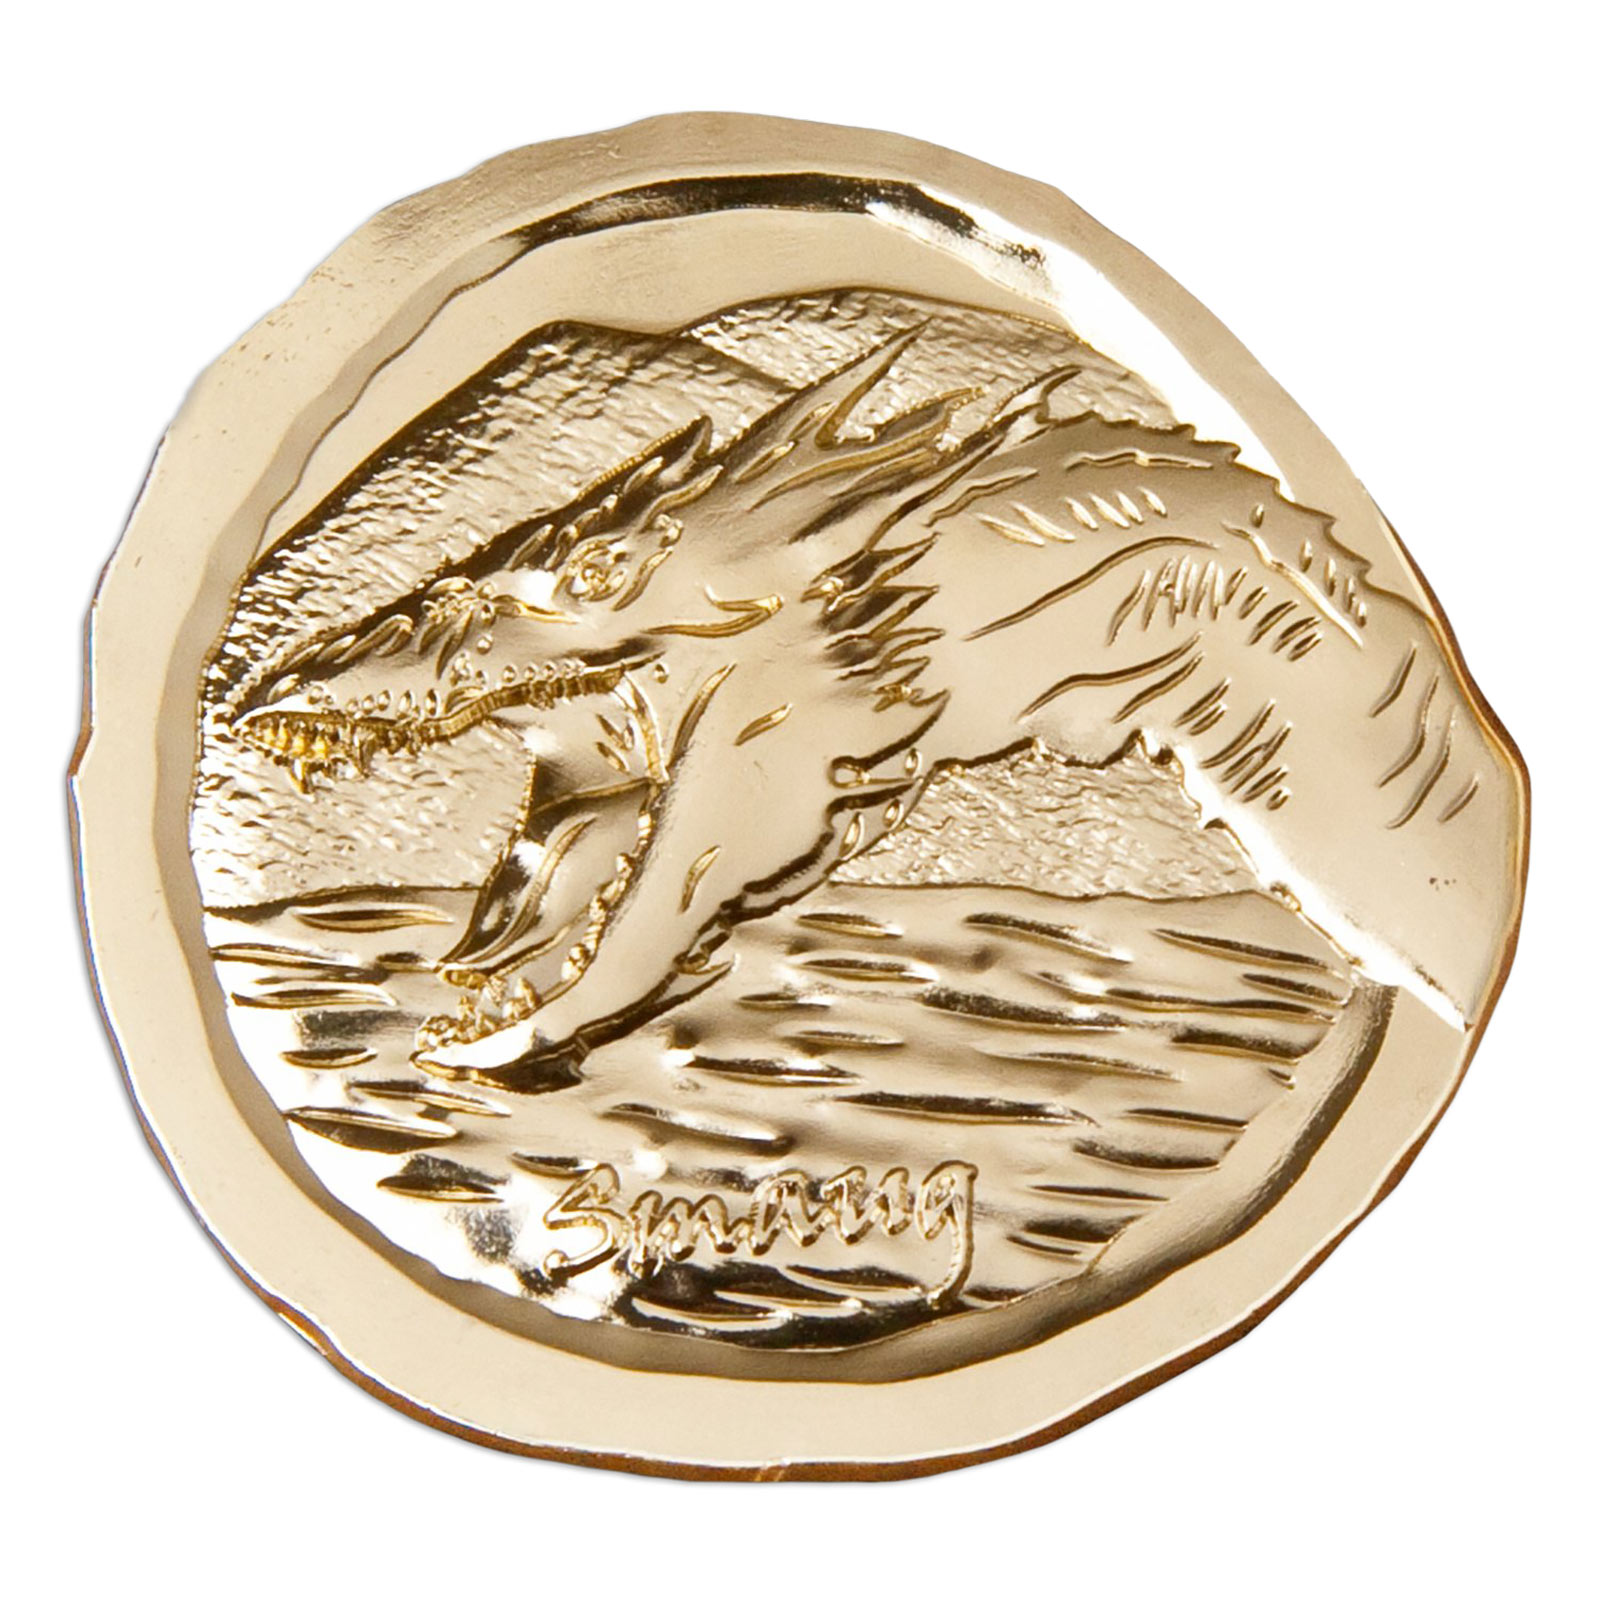 The Hobbit - Smaug Collectible Coin